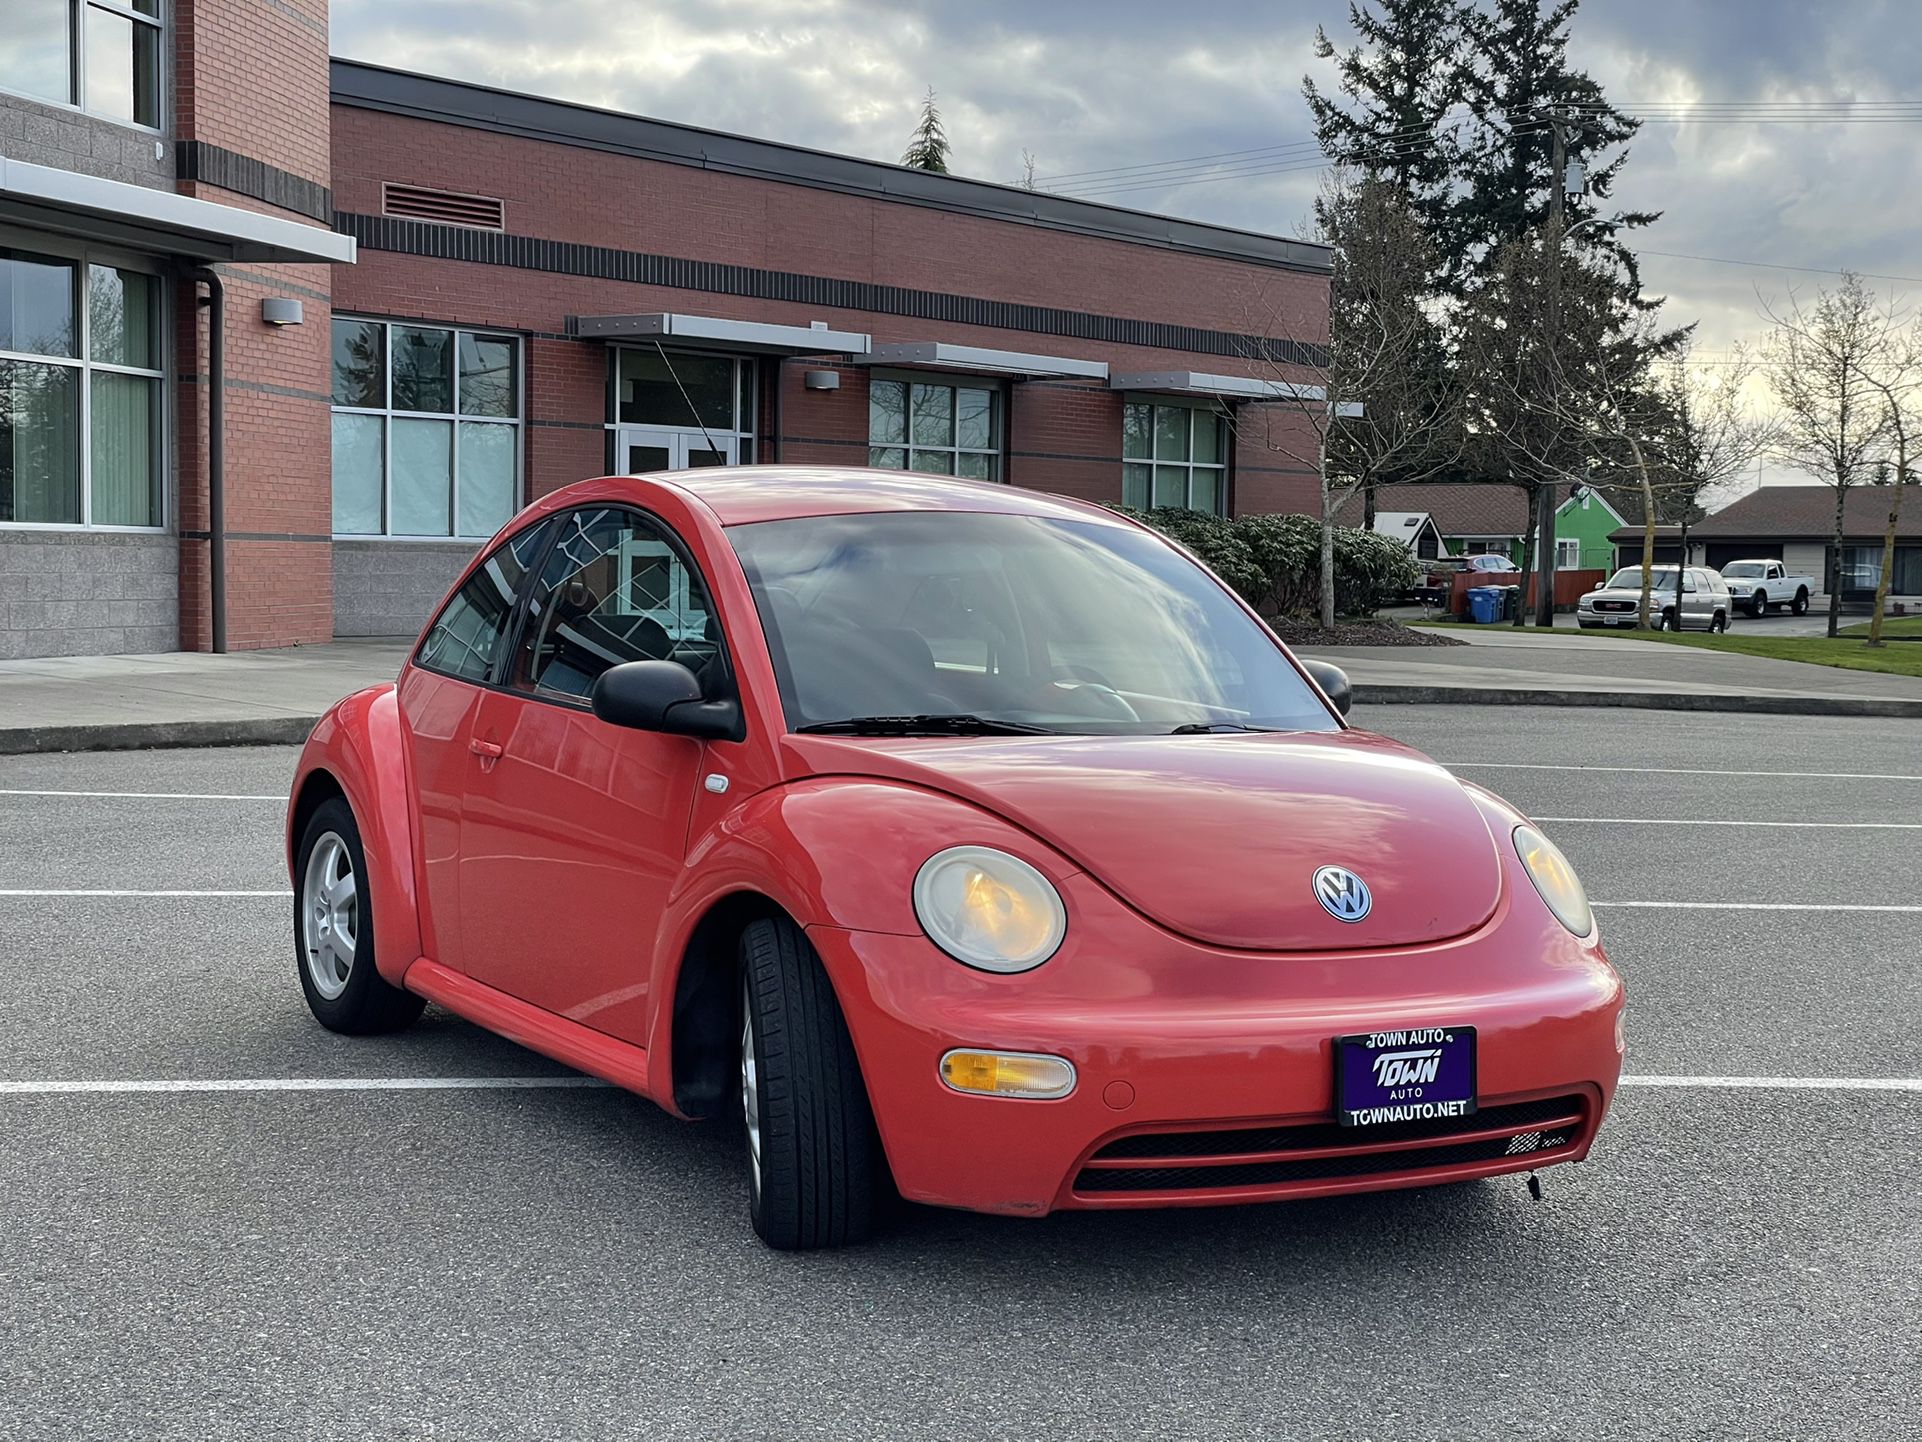 2003 Volkswagen Beetle